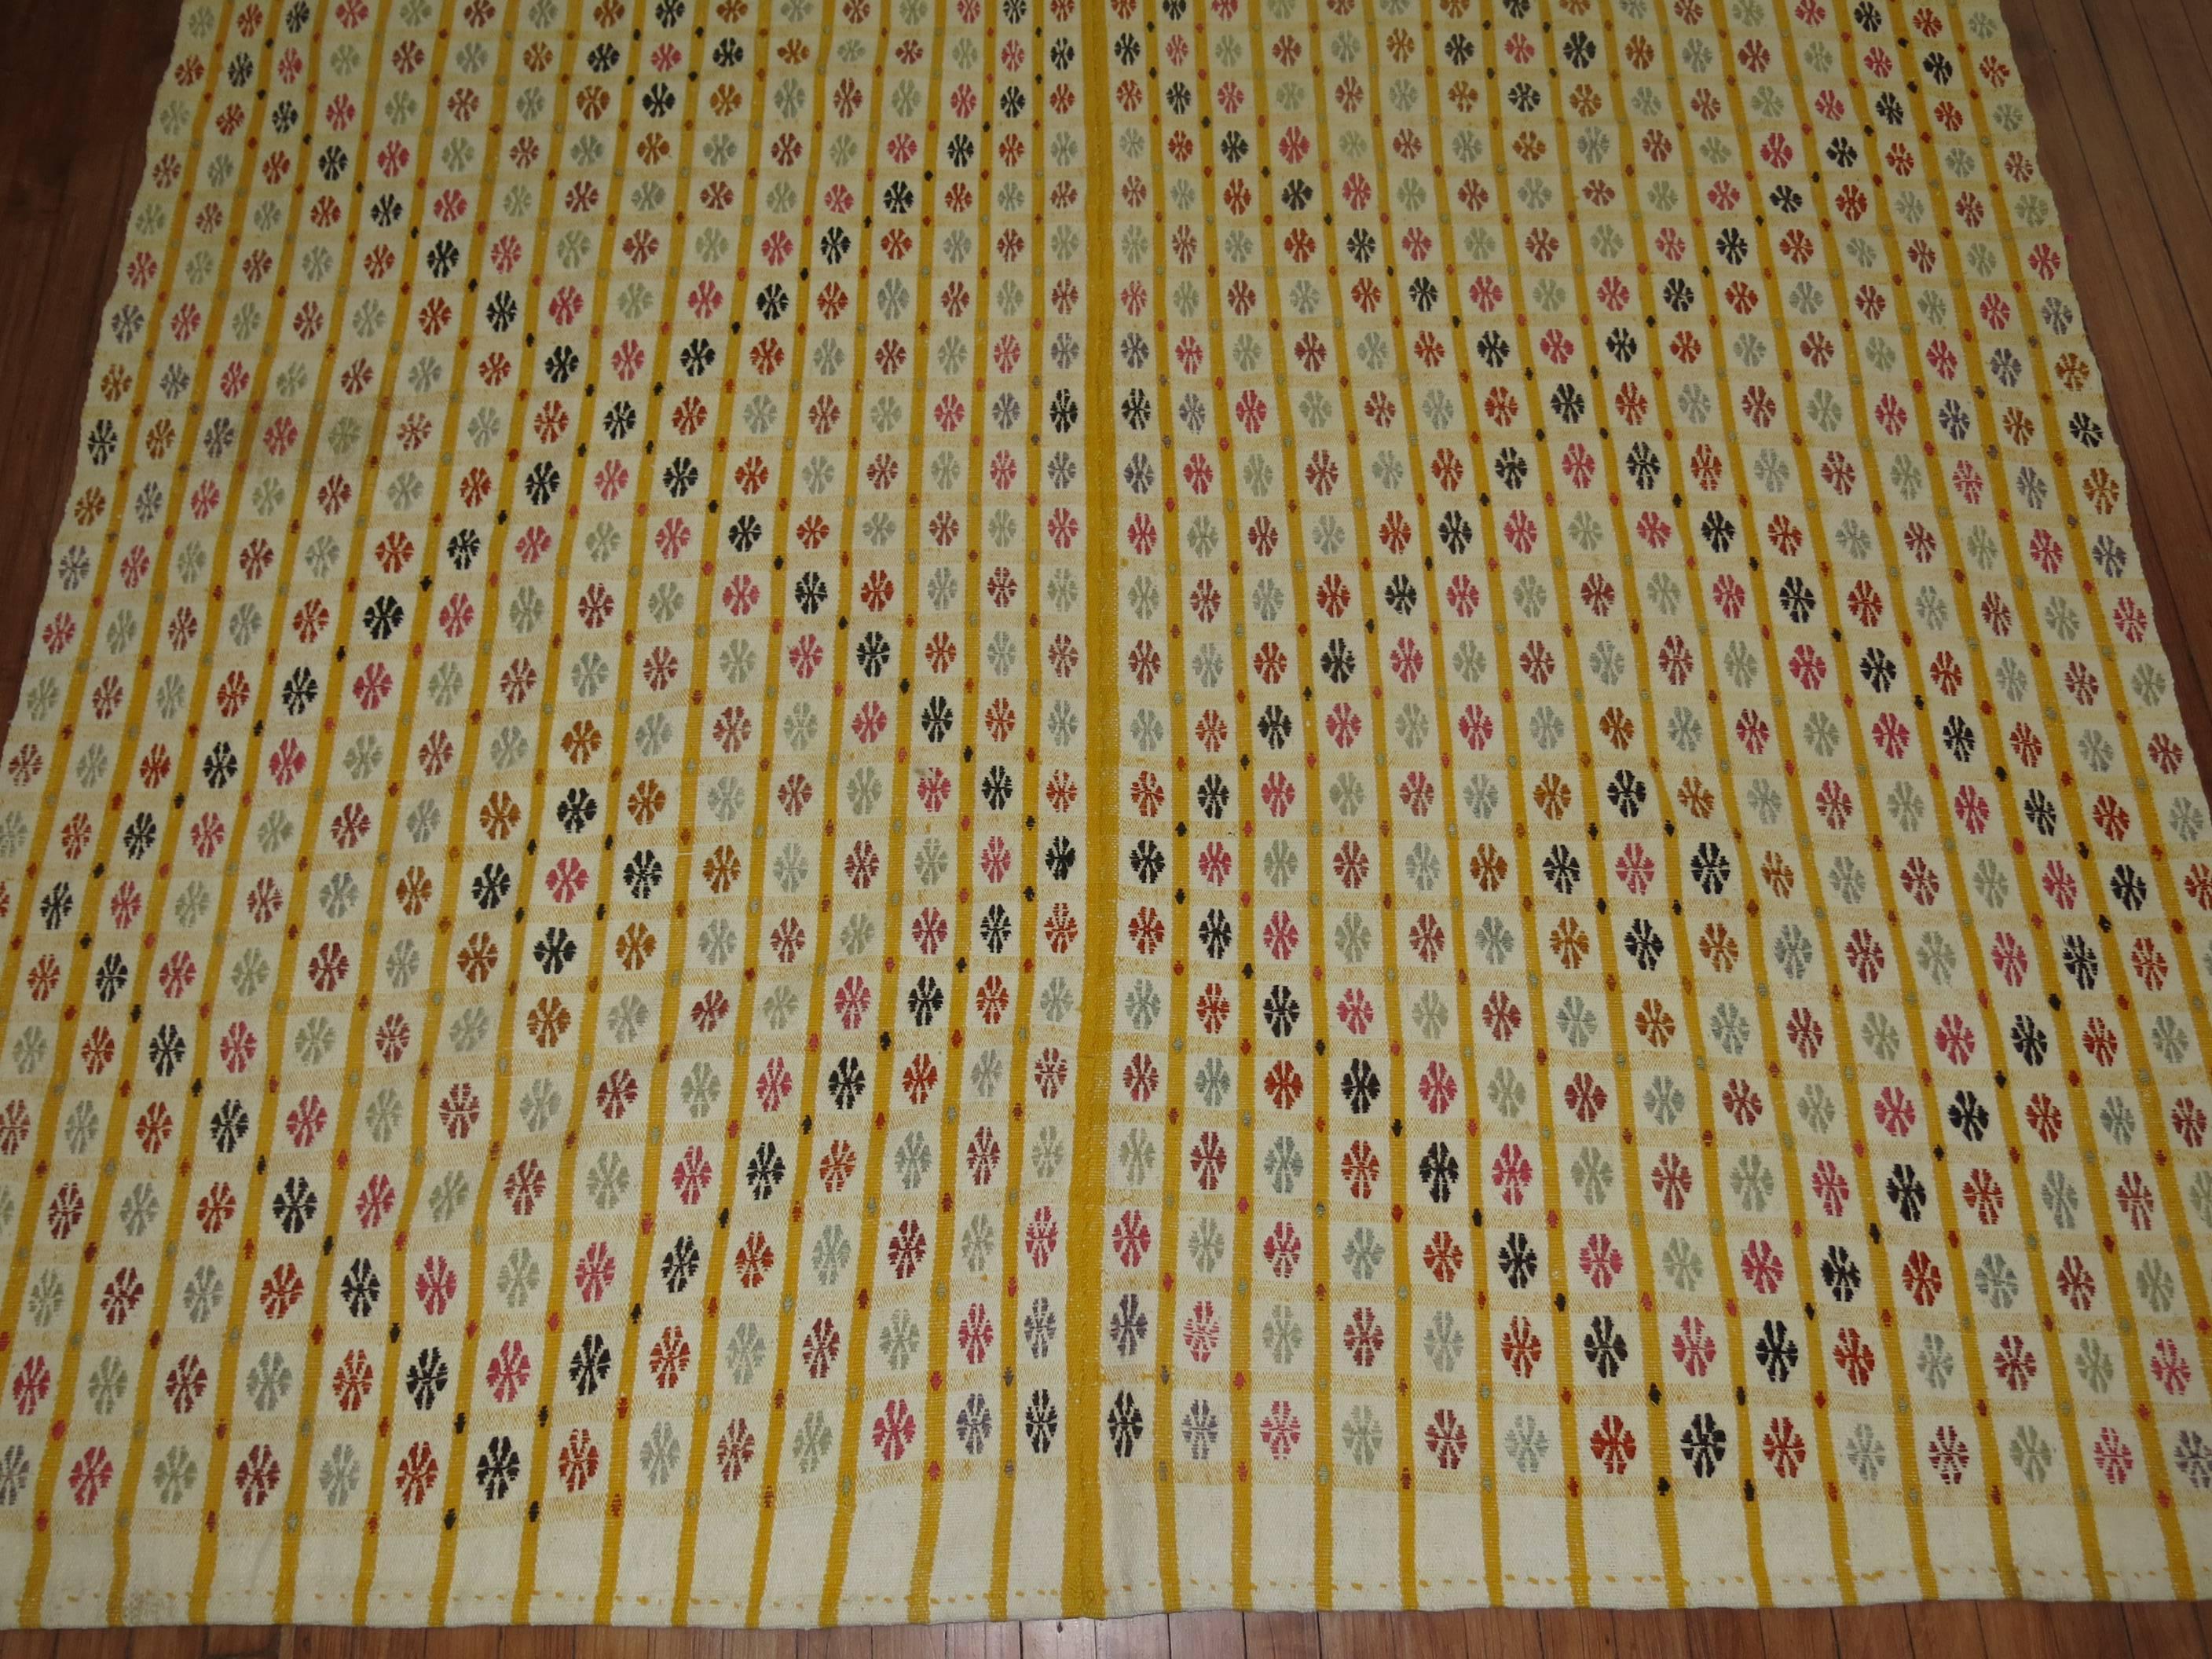 Une technique géométrique colorée de tissage à plat jajim /cicim de la partie sud de la Turquie.

Mesures : 6'10'' x 9'10''

Les Cicims turcs sont principalement utilisés comme rideaux ou couvertures. Les fils de trame et de chaîne qui